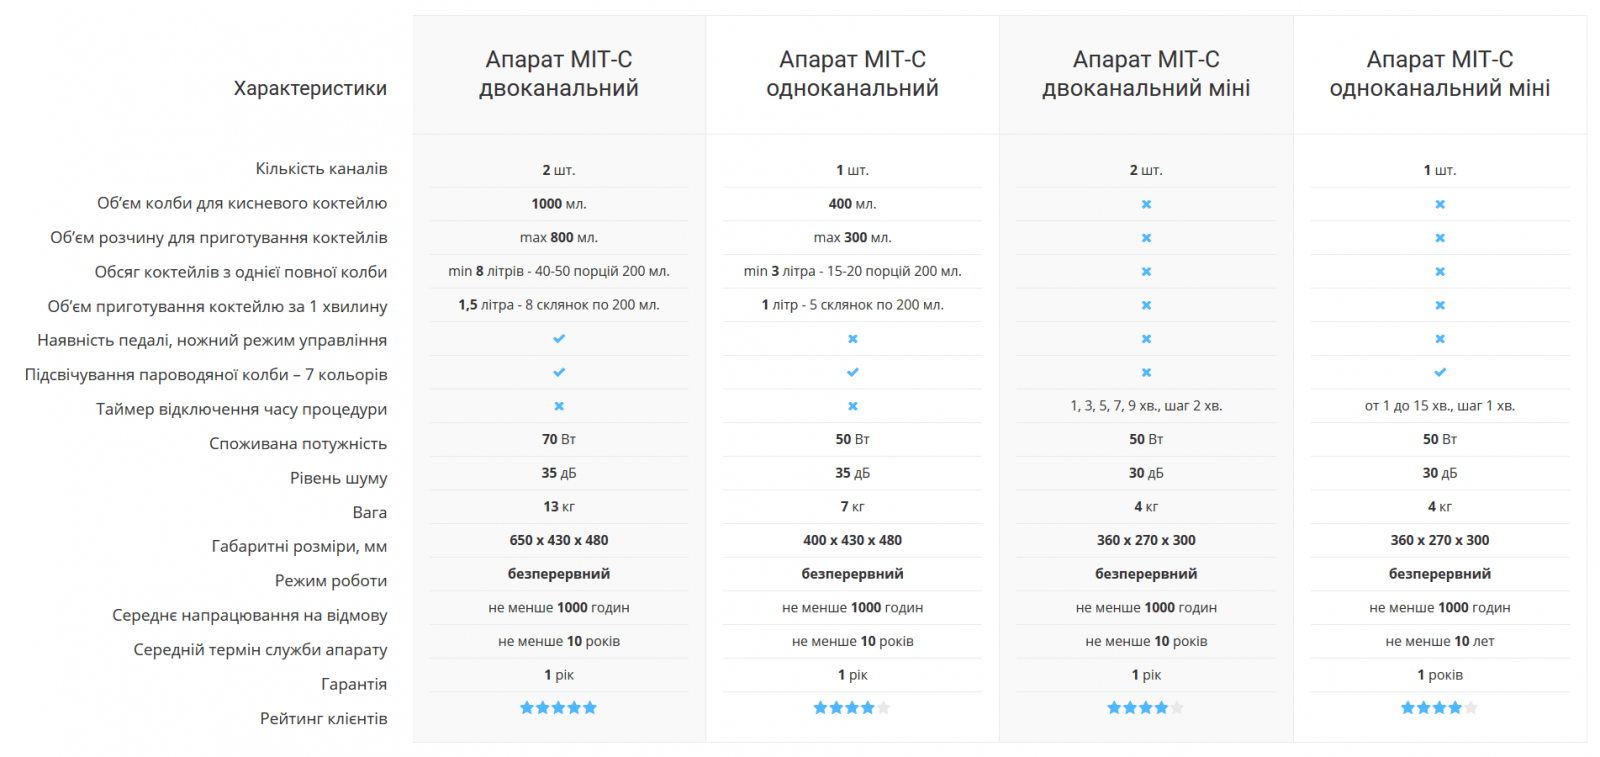 таблиця - порівняльні характеристики апаратів МІТ-С